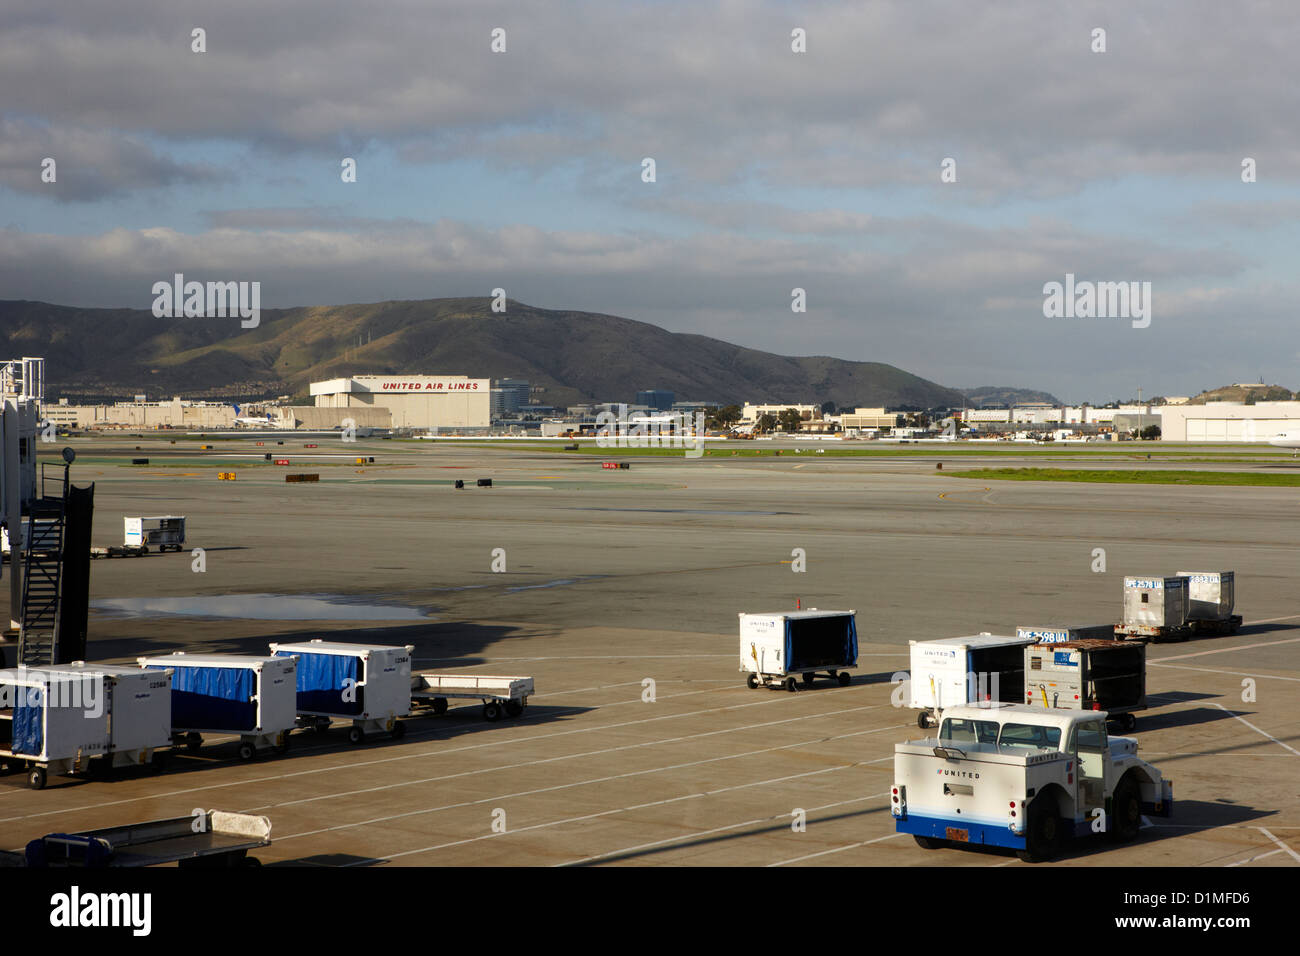 United Airlines-Abschnitt von San Francisco International Airport Kalifornien Vereinigte Staaten Stockfoto